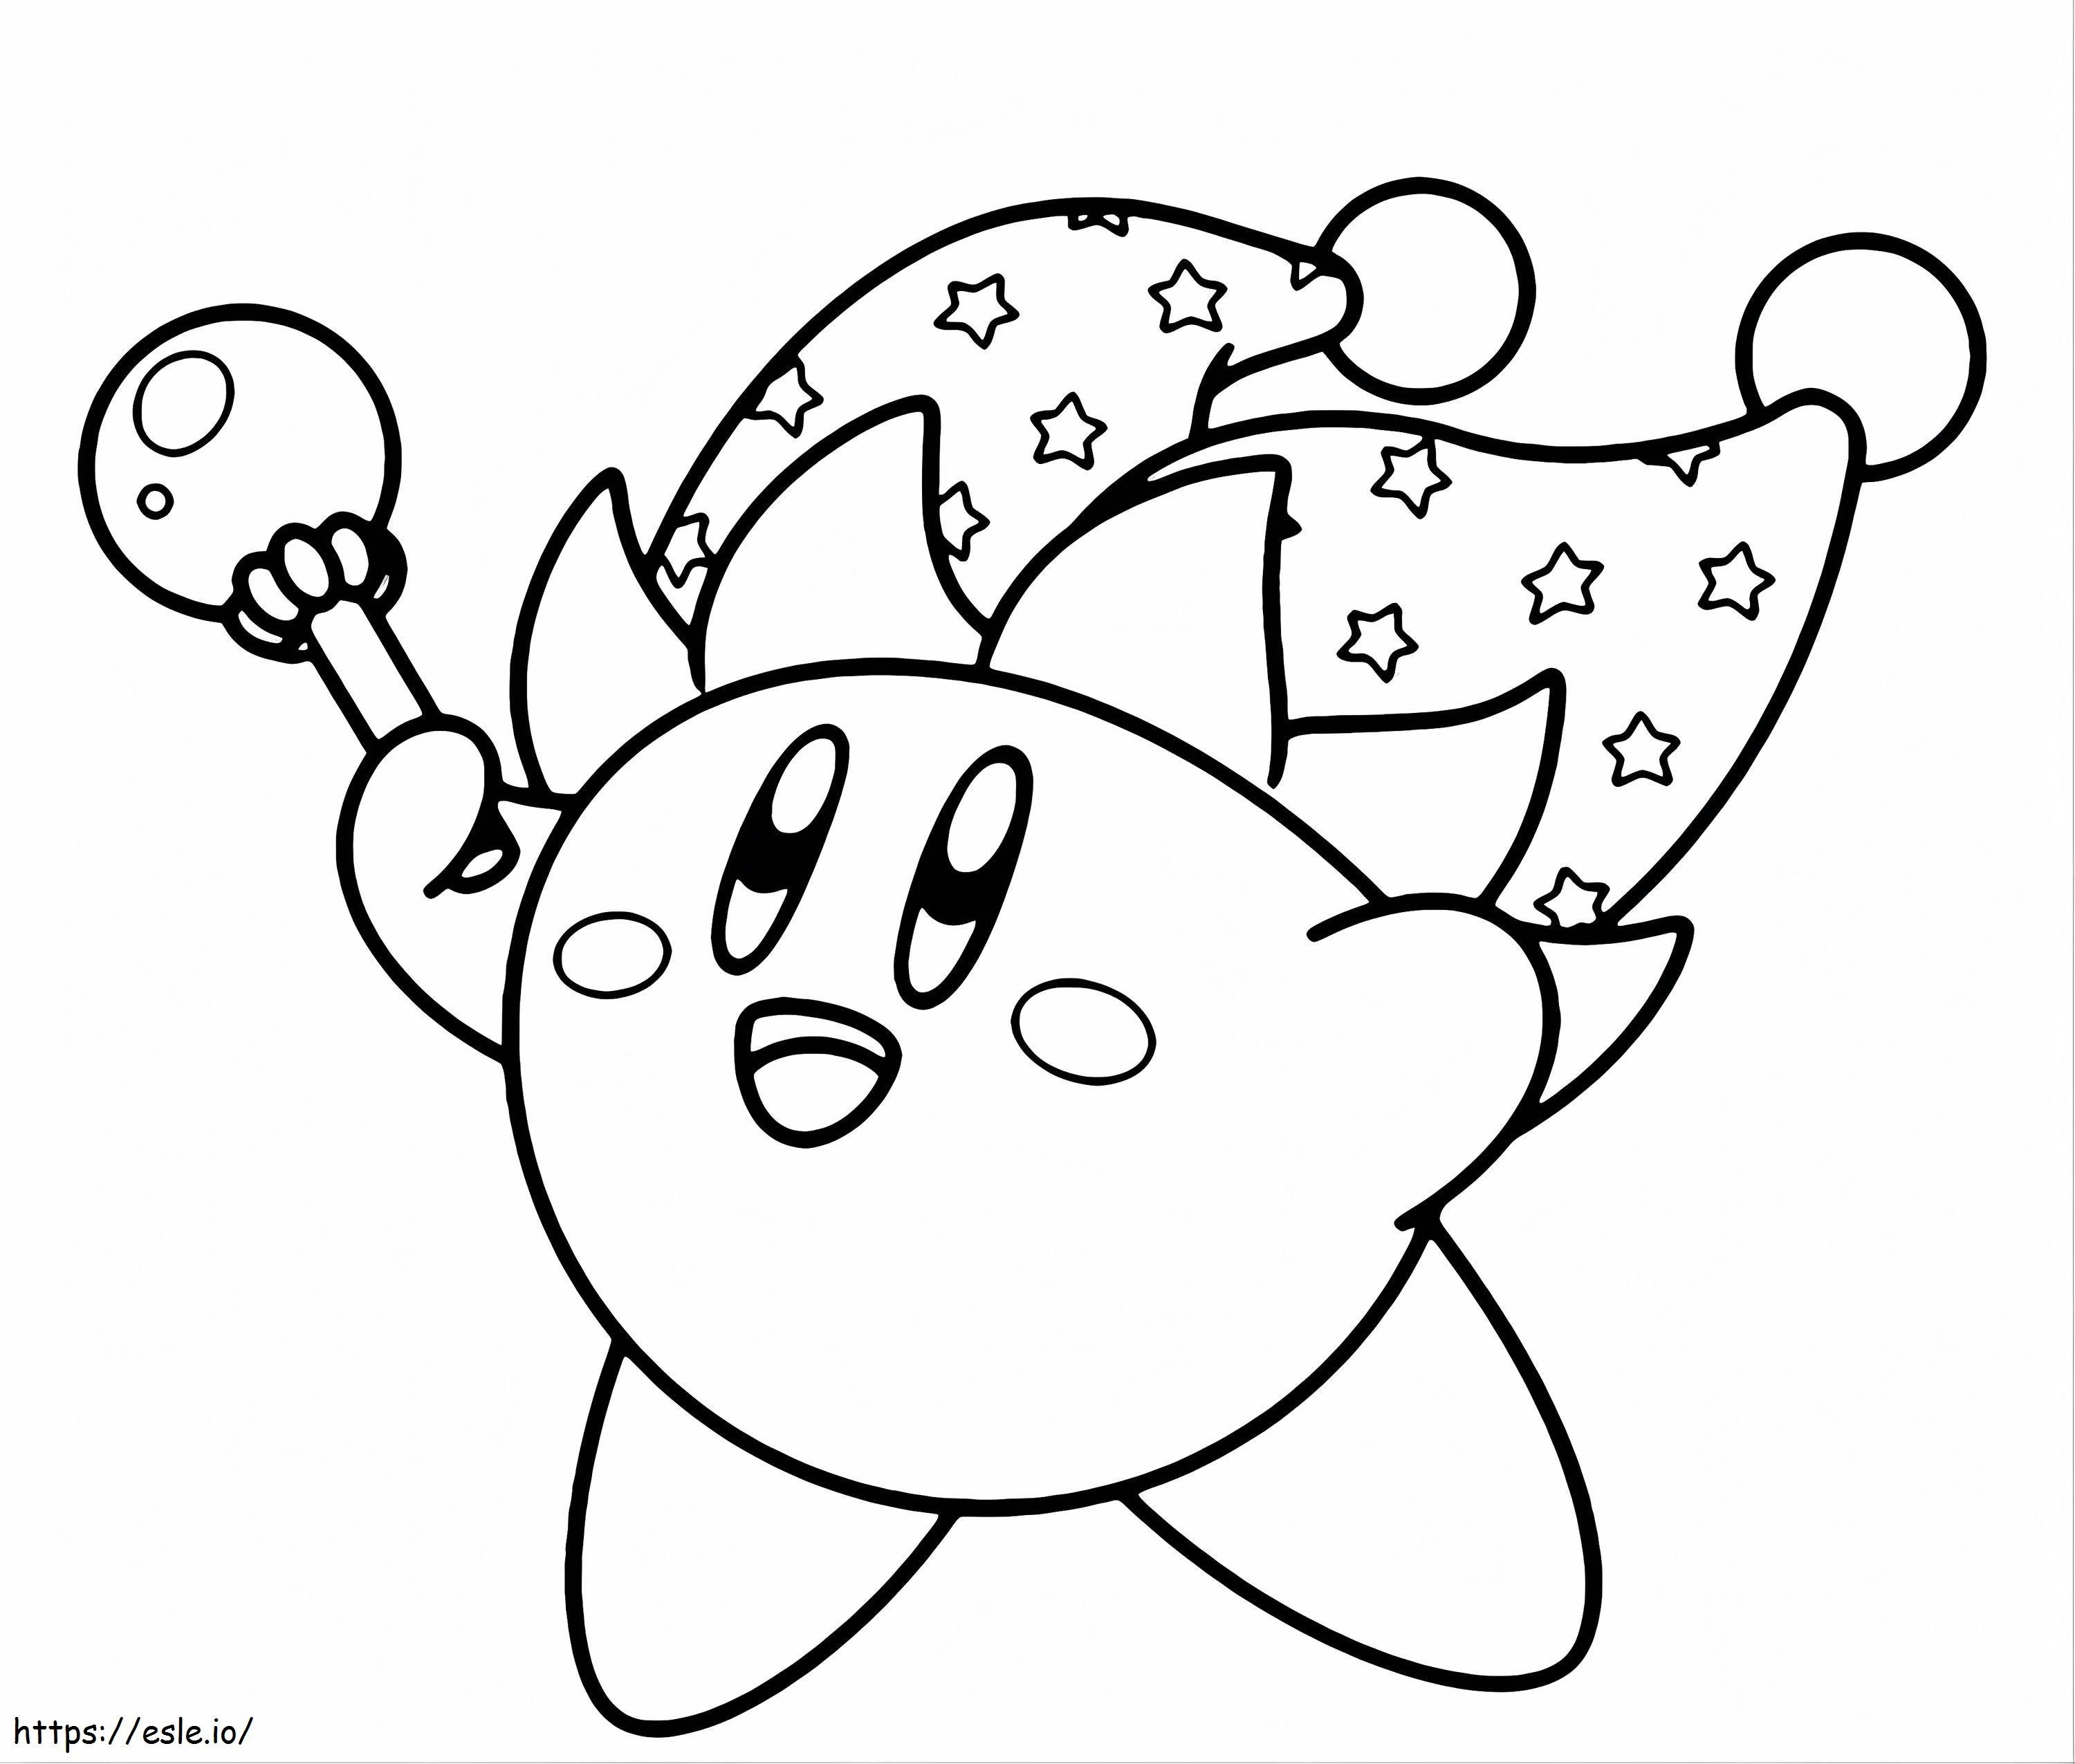 1528855953 Beeindruckende Idee Kirbya4 ausmalbilder